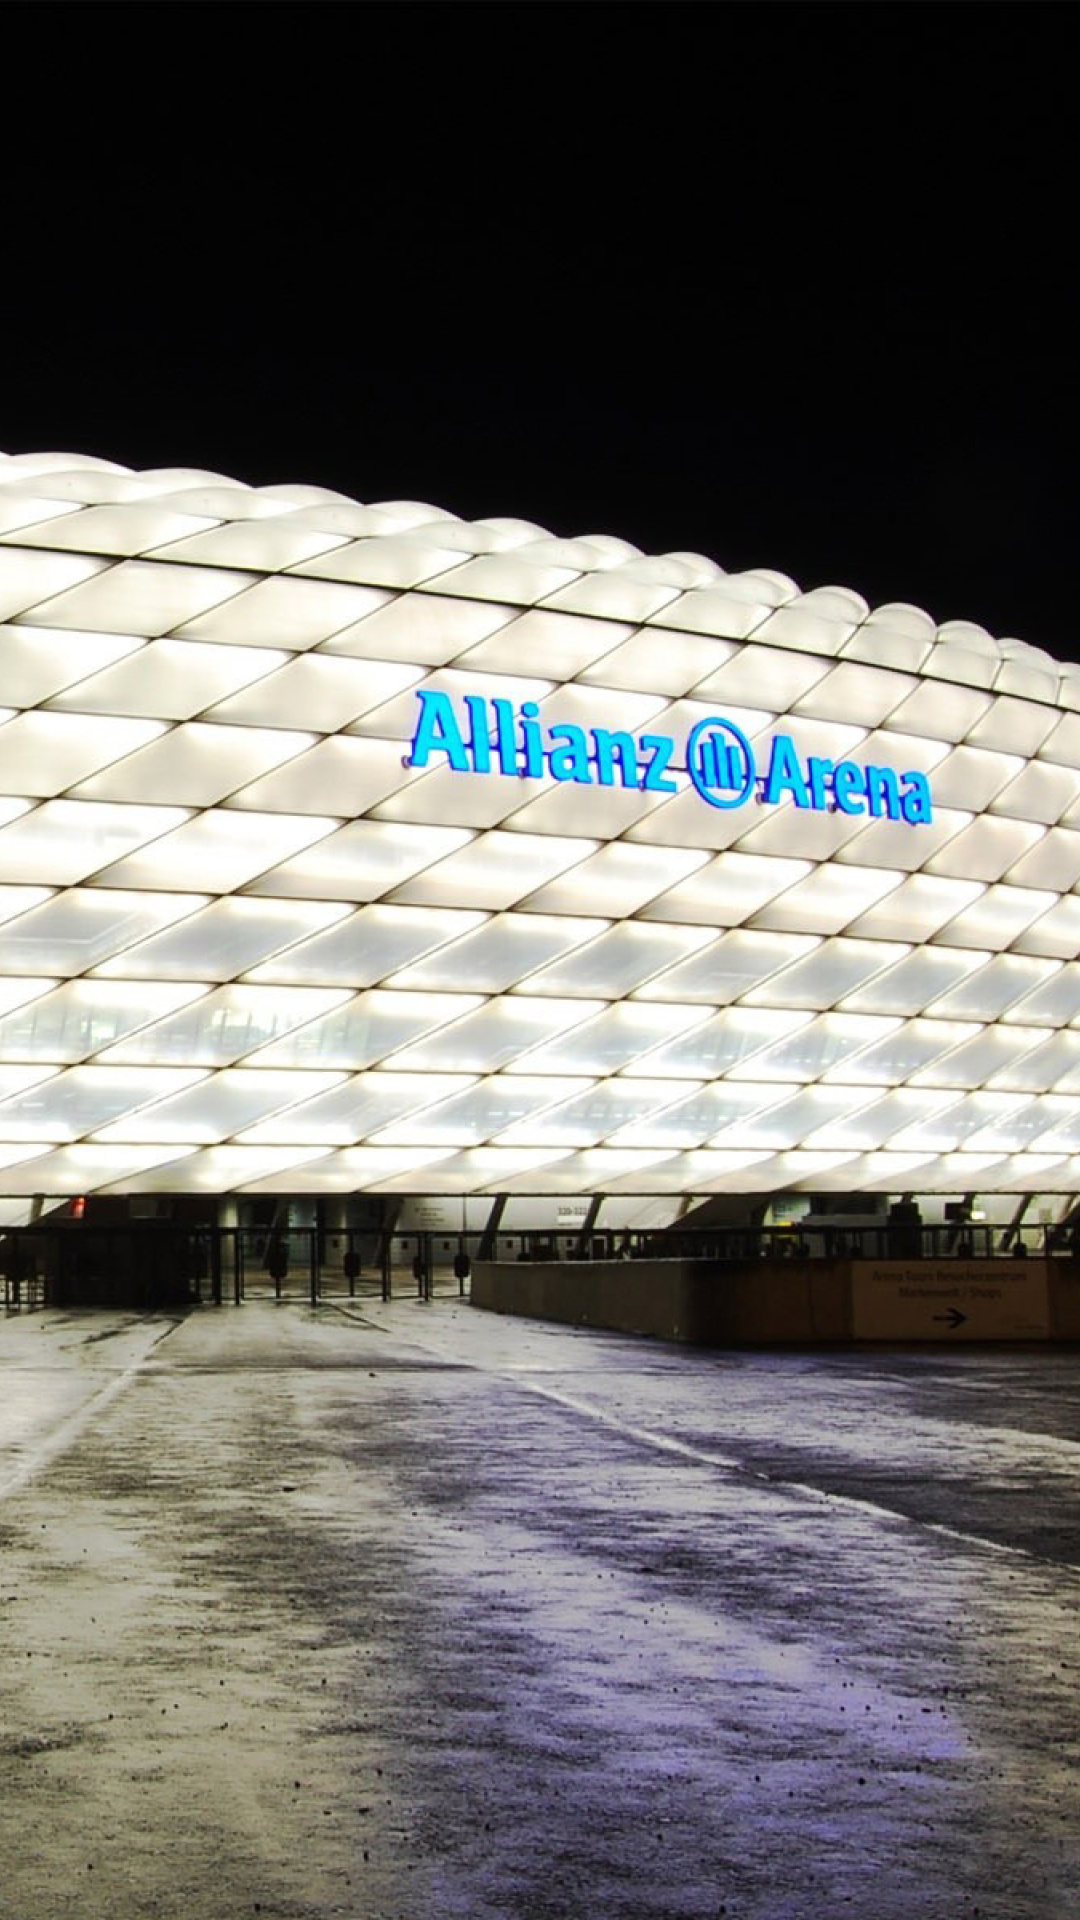 Allianz Arena is stadium in Munich wallpaper 1080x1920